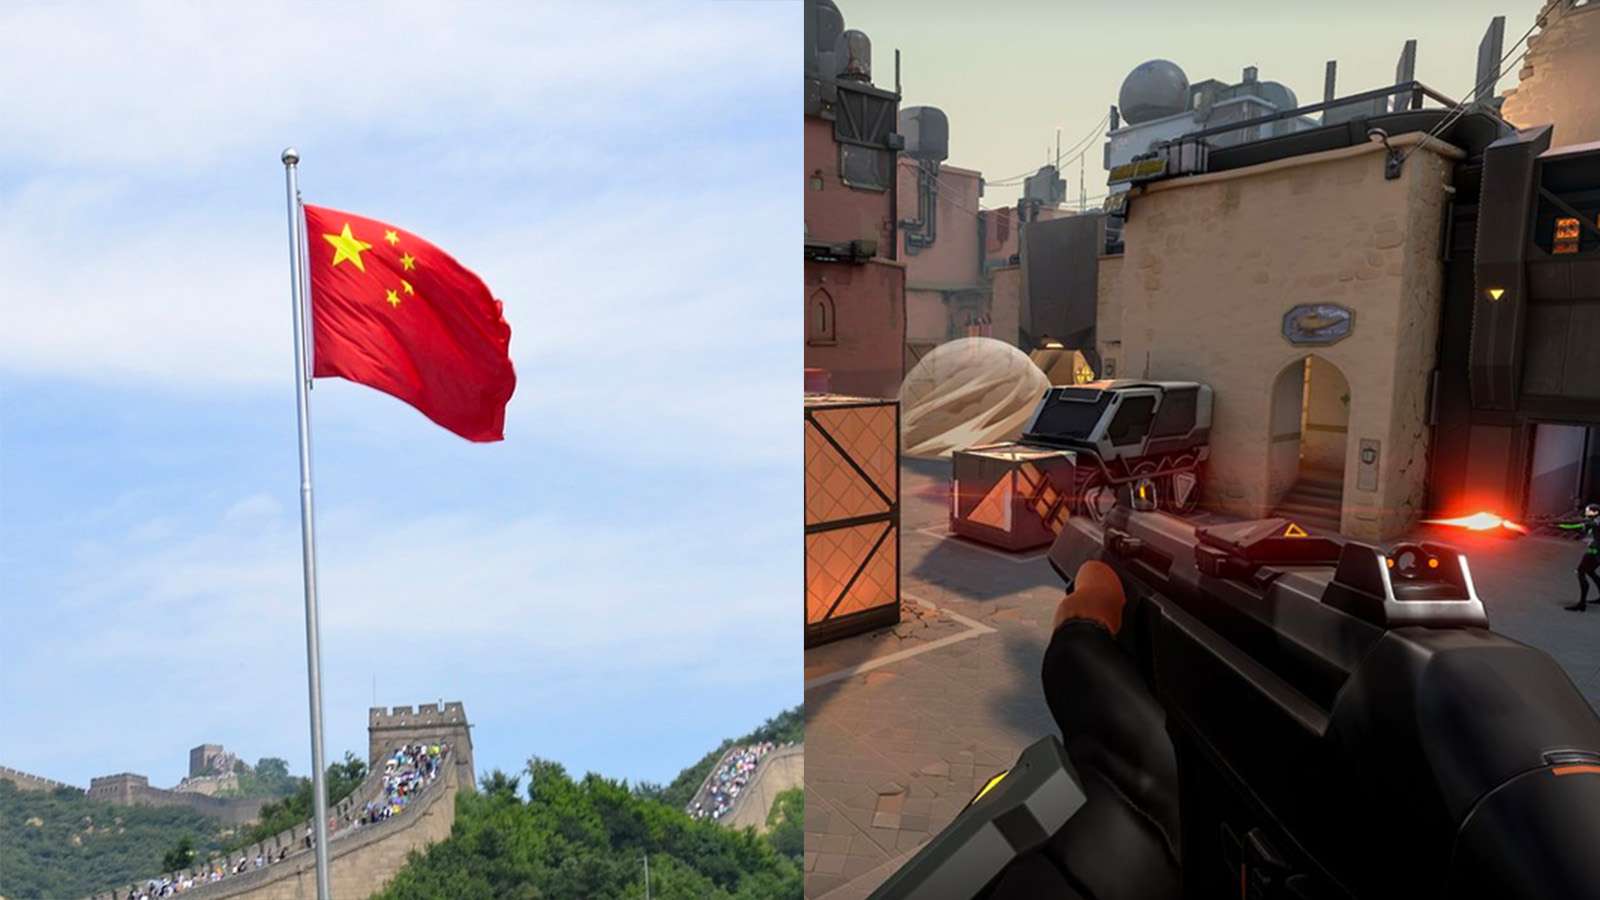 China flag next to Valorant still image